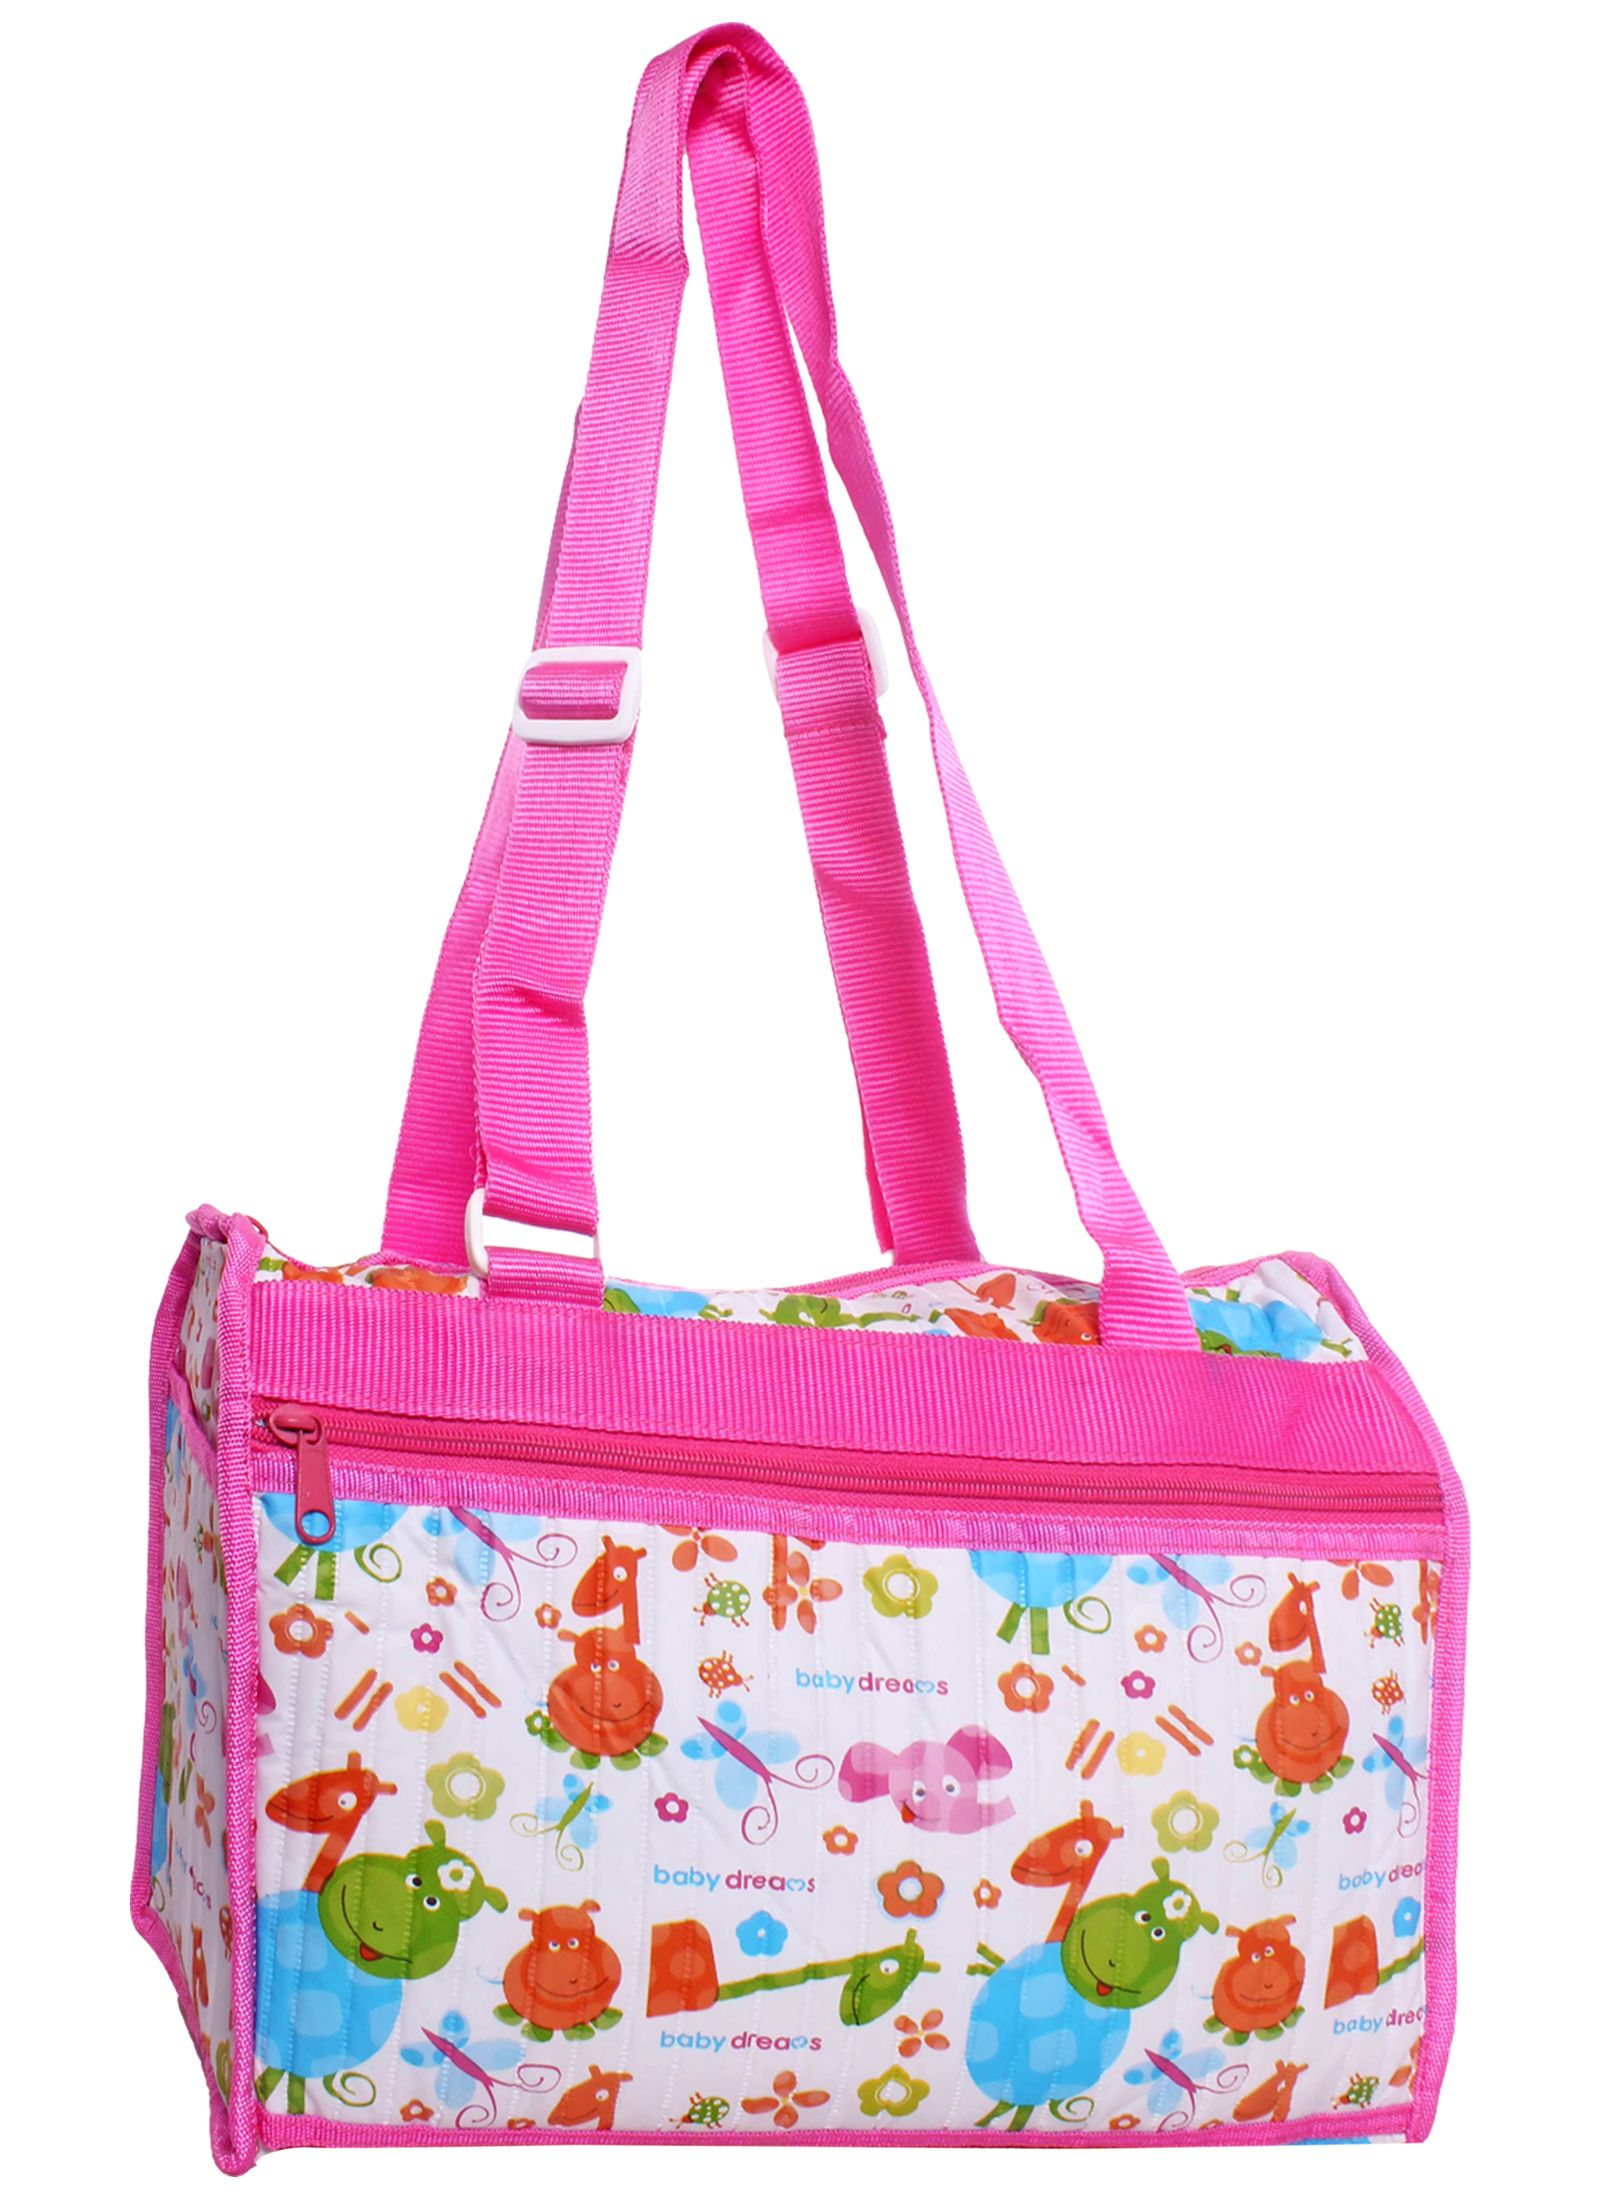 Morisons Baby Dreams Pink Diaper Bag